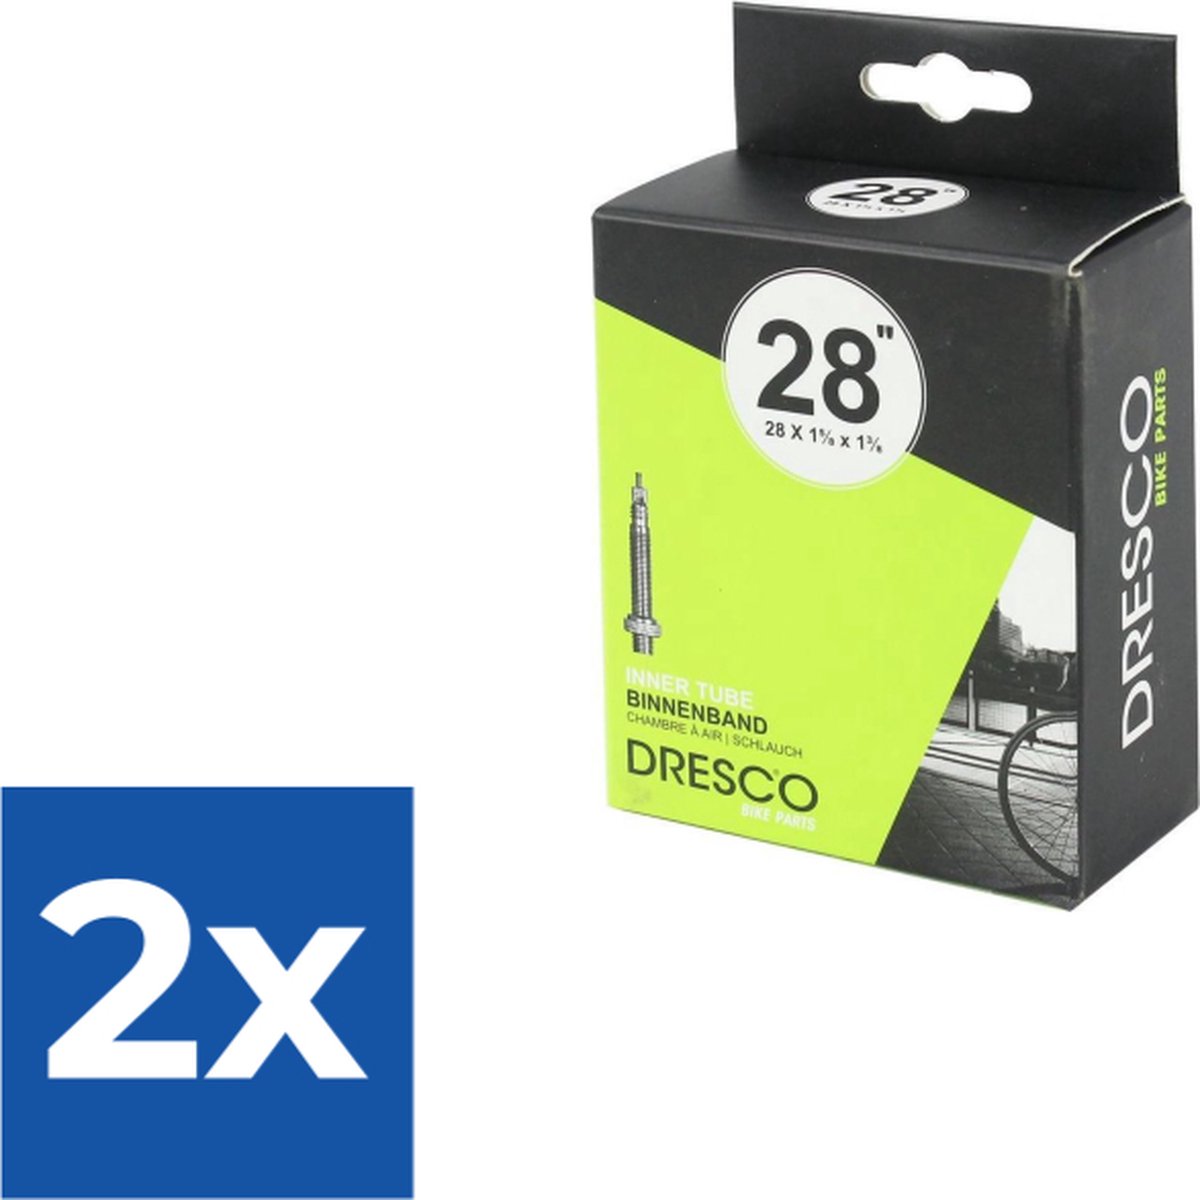 Dresco Binnenband 28 x 1 5/8 x 1 3/8 (37-622) Sclave 40mm - Voordeelverpakking 2 stuks